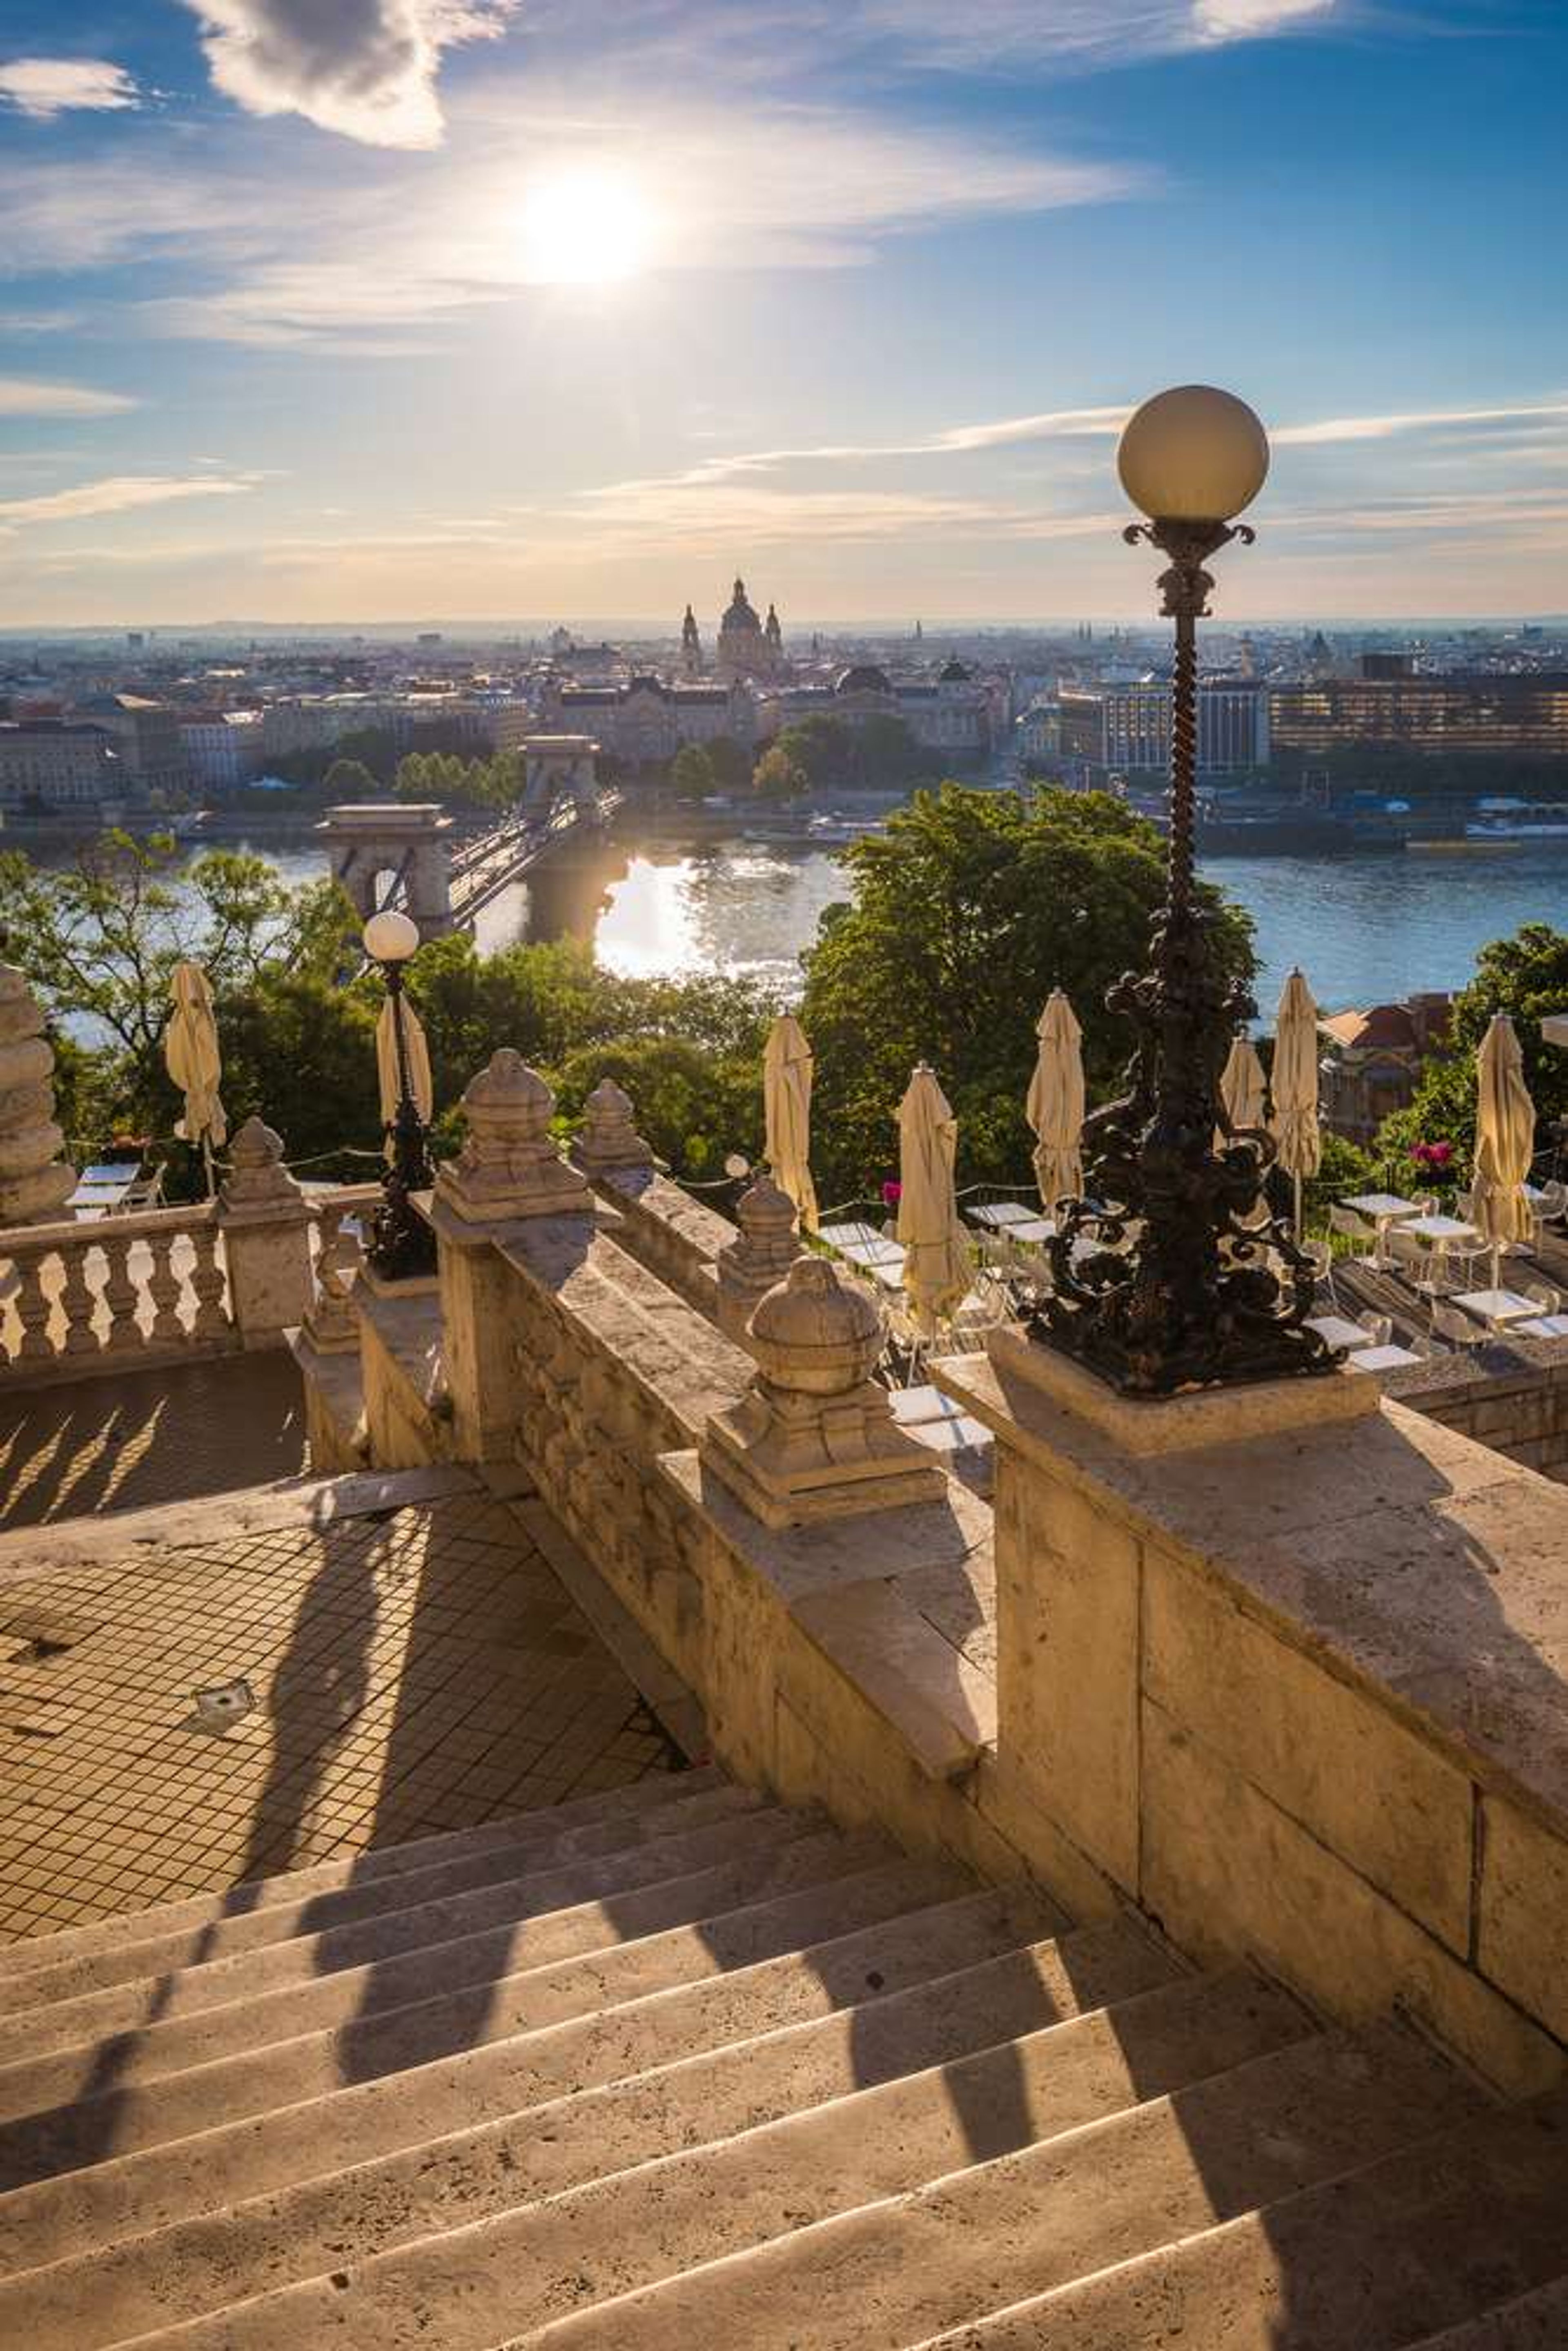 Hongarije Boedapest uitzicht Royal Palace Buda Castle